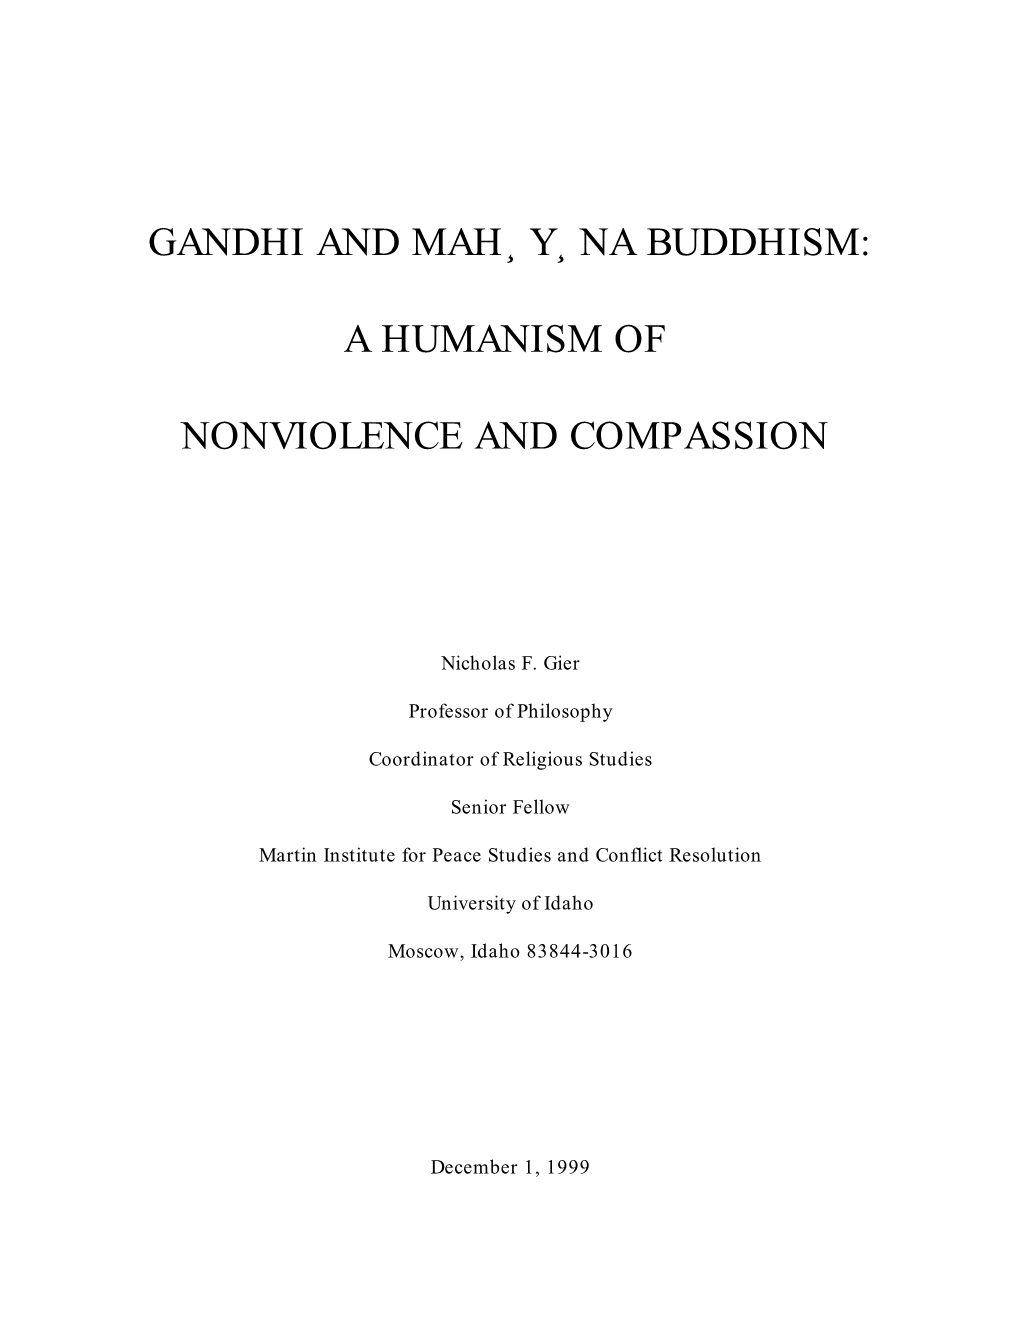 Gandhi and Mahayana Buddhism